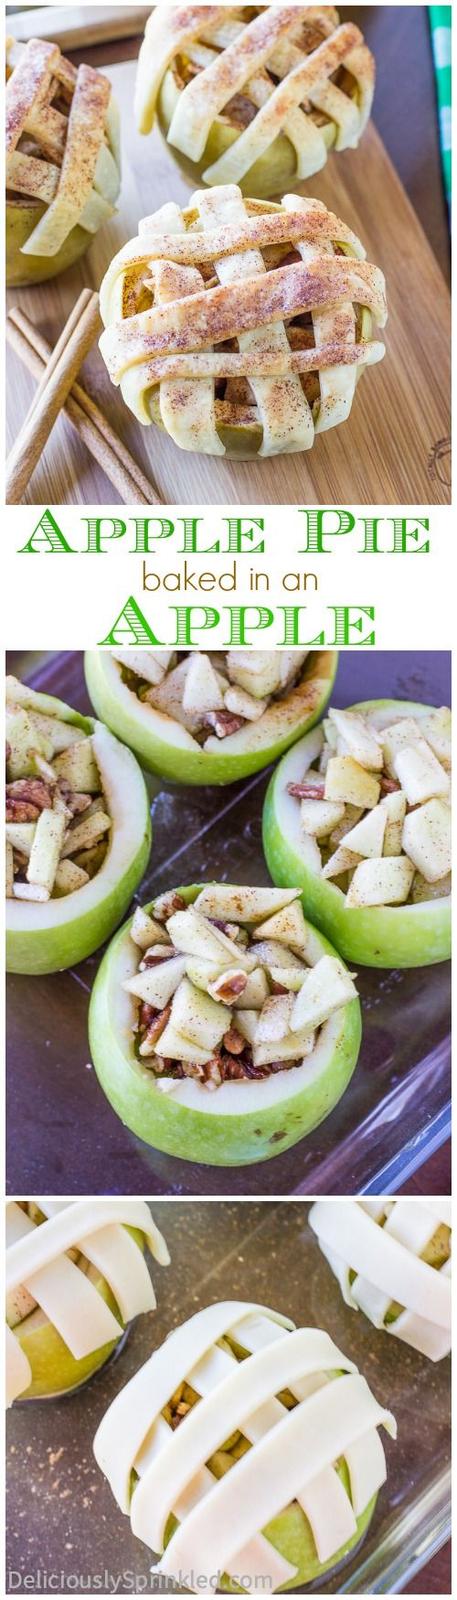 Americké koláčky - Easy Baked Apple Pie Apples